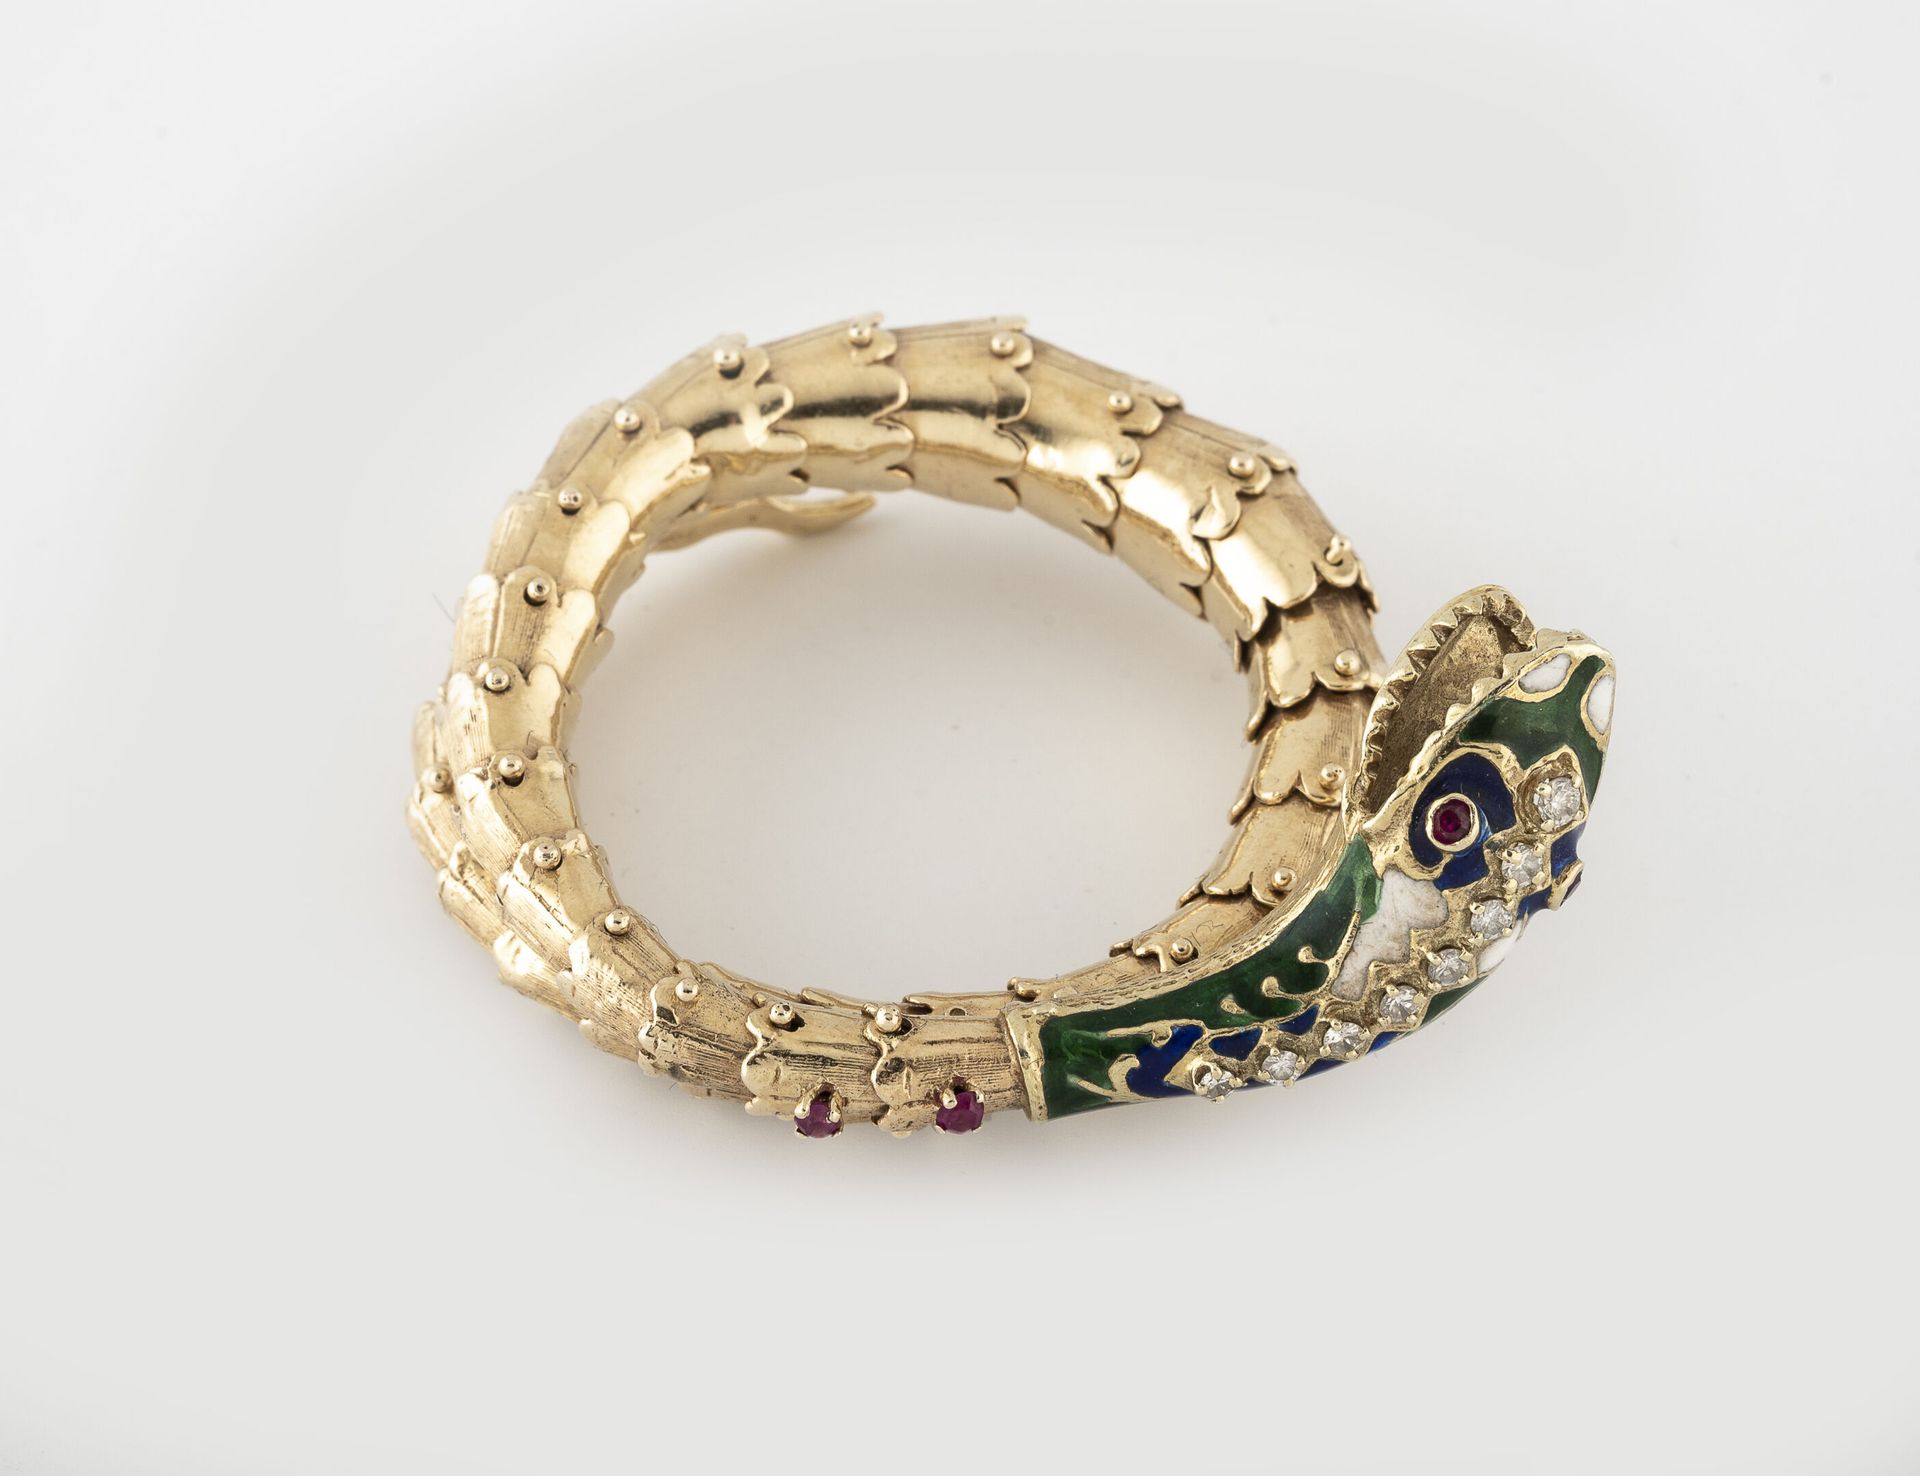 FRANCE, seconde moitié du XIXème siècle Articulated bracelet in yellow gold (750&hellip;